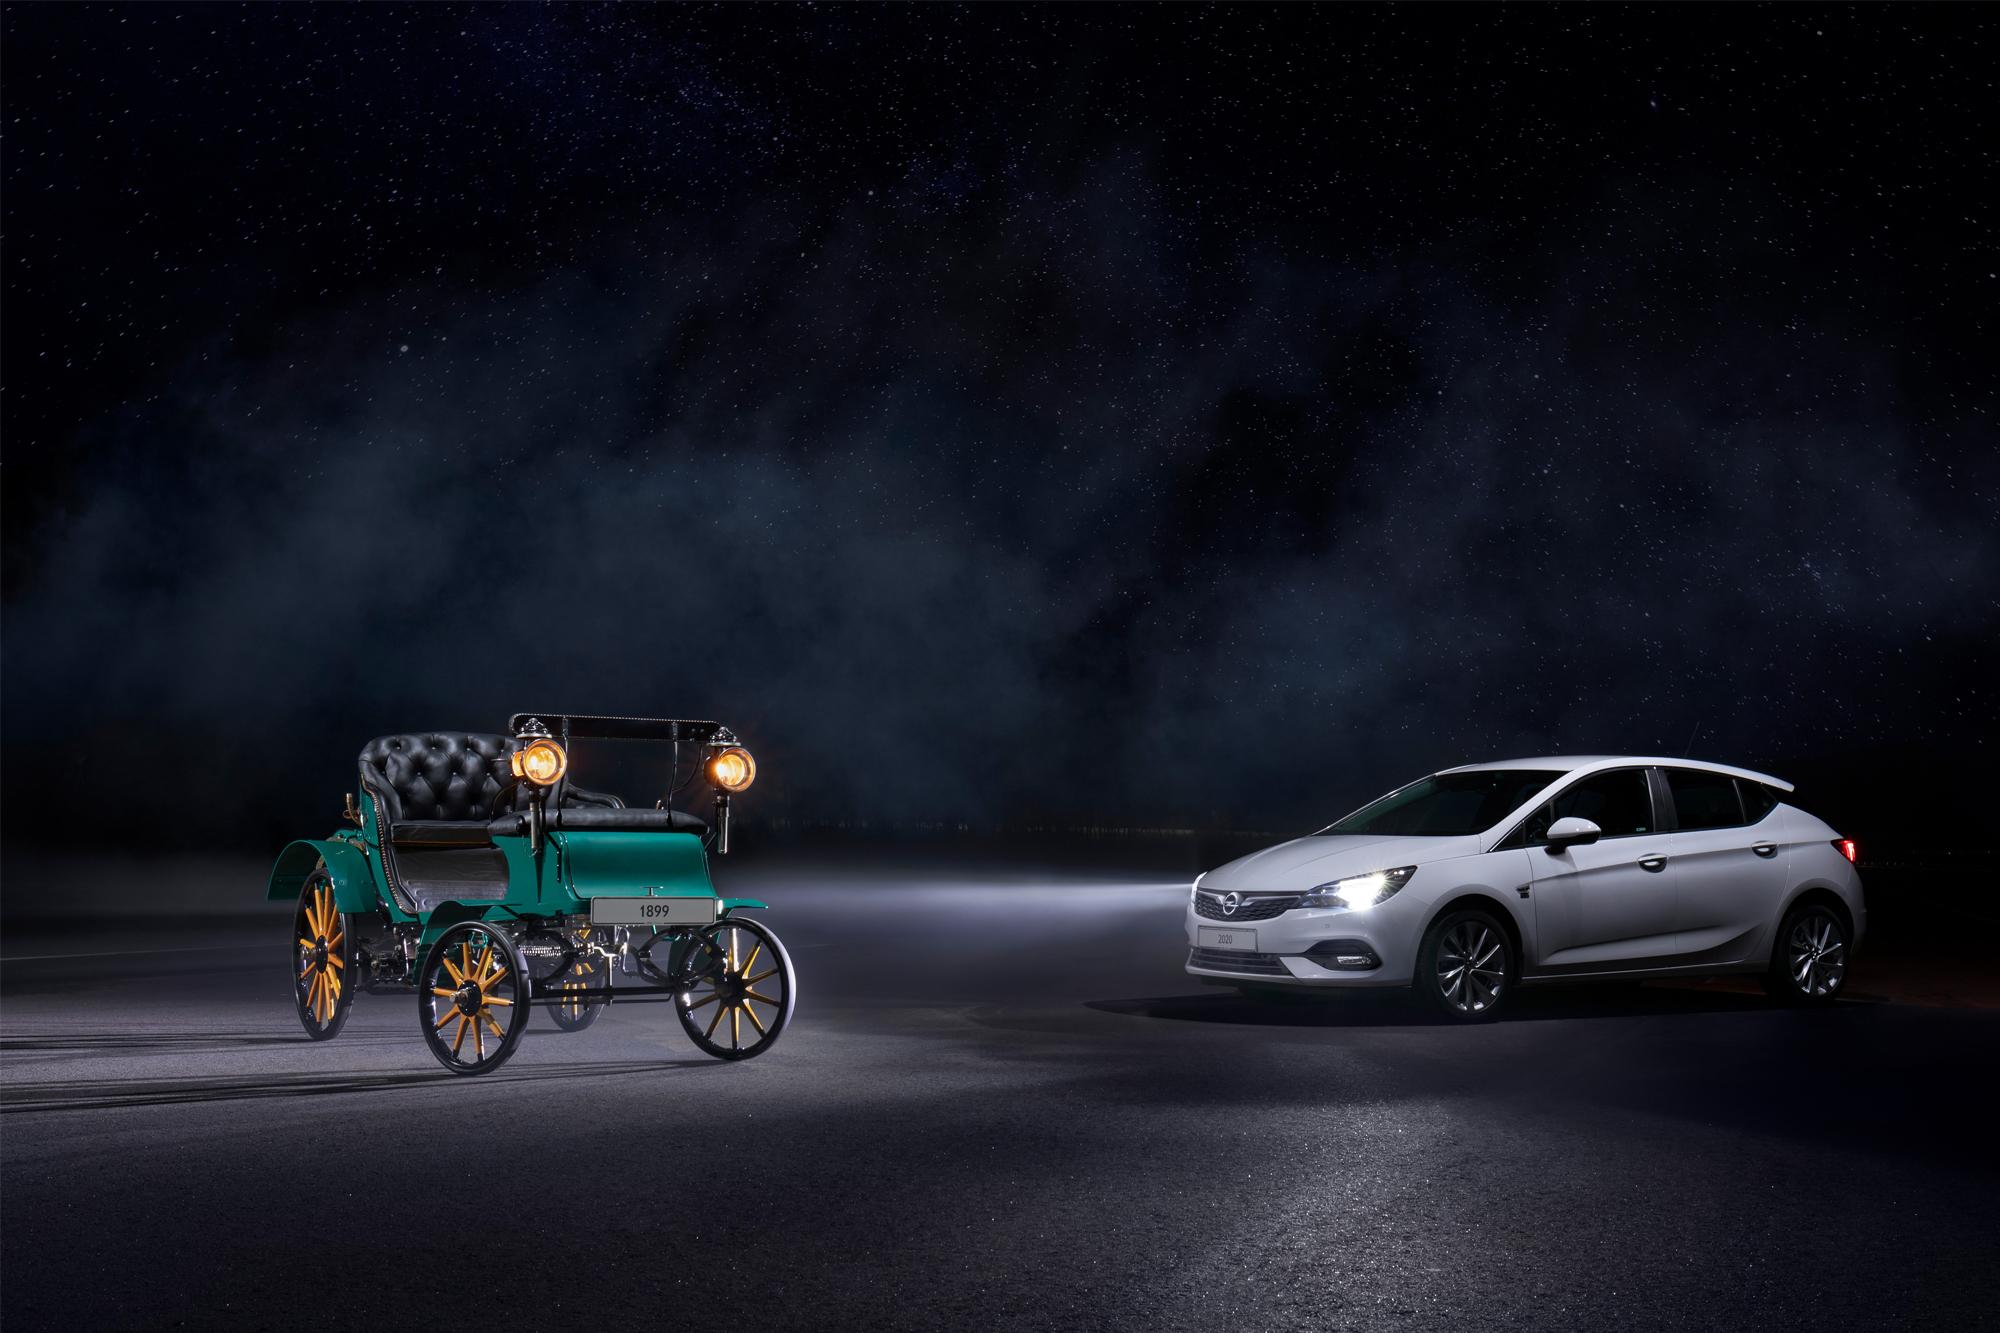 Βλέπετε και σας βλέπουν, καινοτομίες φωτισμού Opel στα 121 χρόνια της